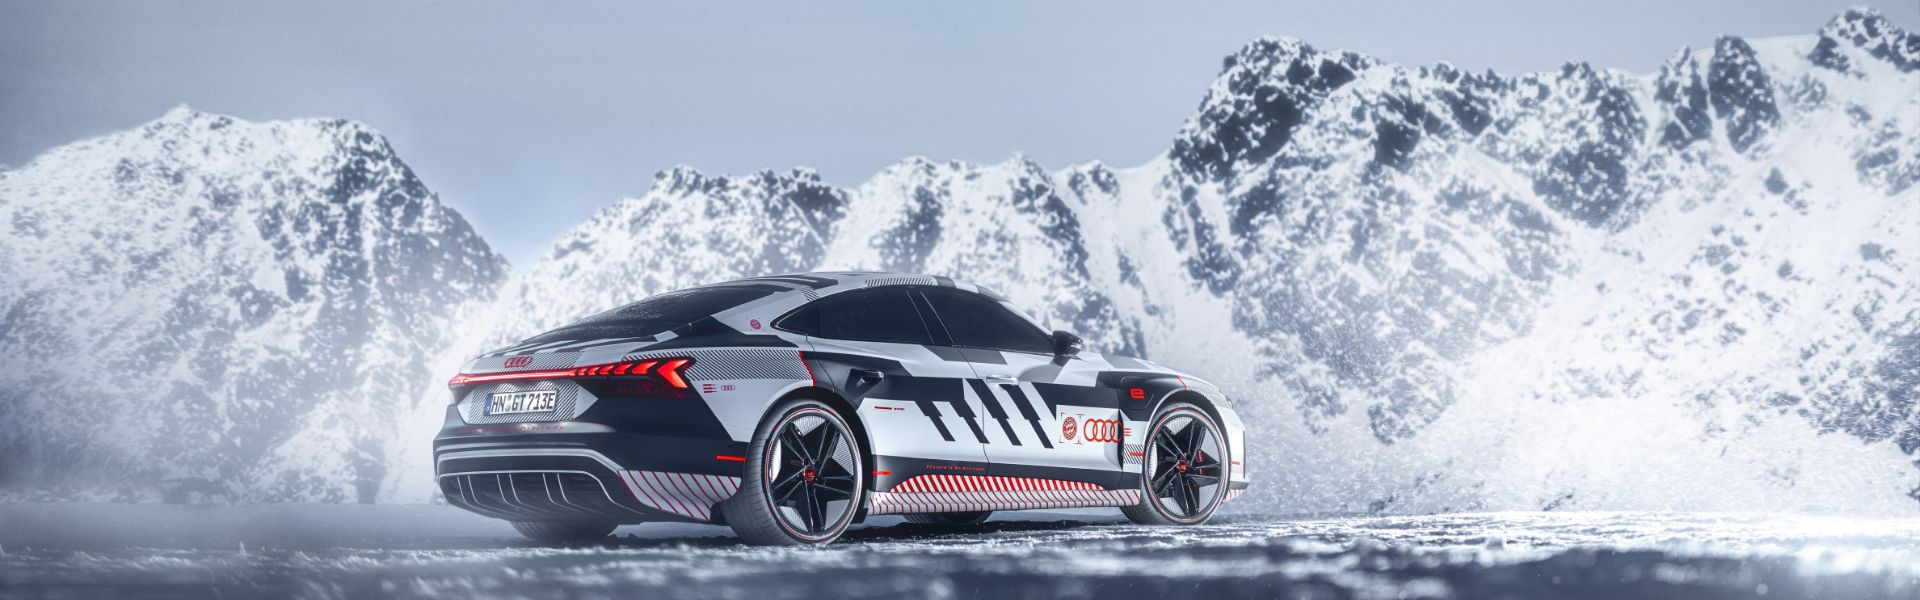 Audi RS e-tron GT in FC Bayern Sonderfolierung auf Eispiste